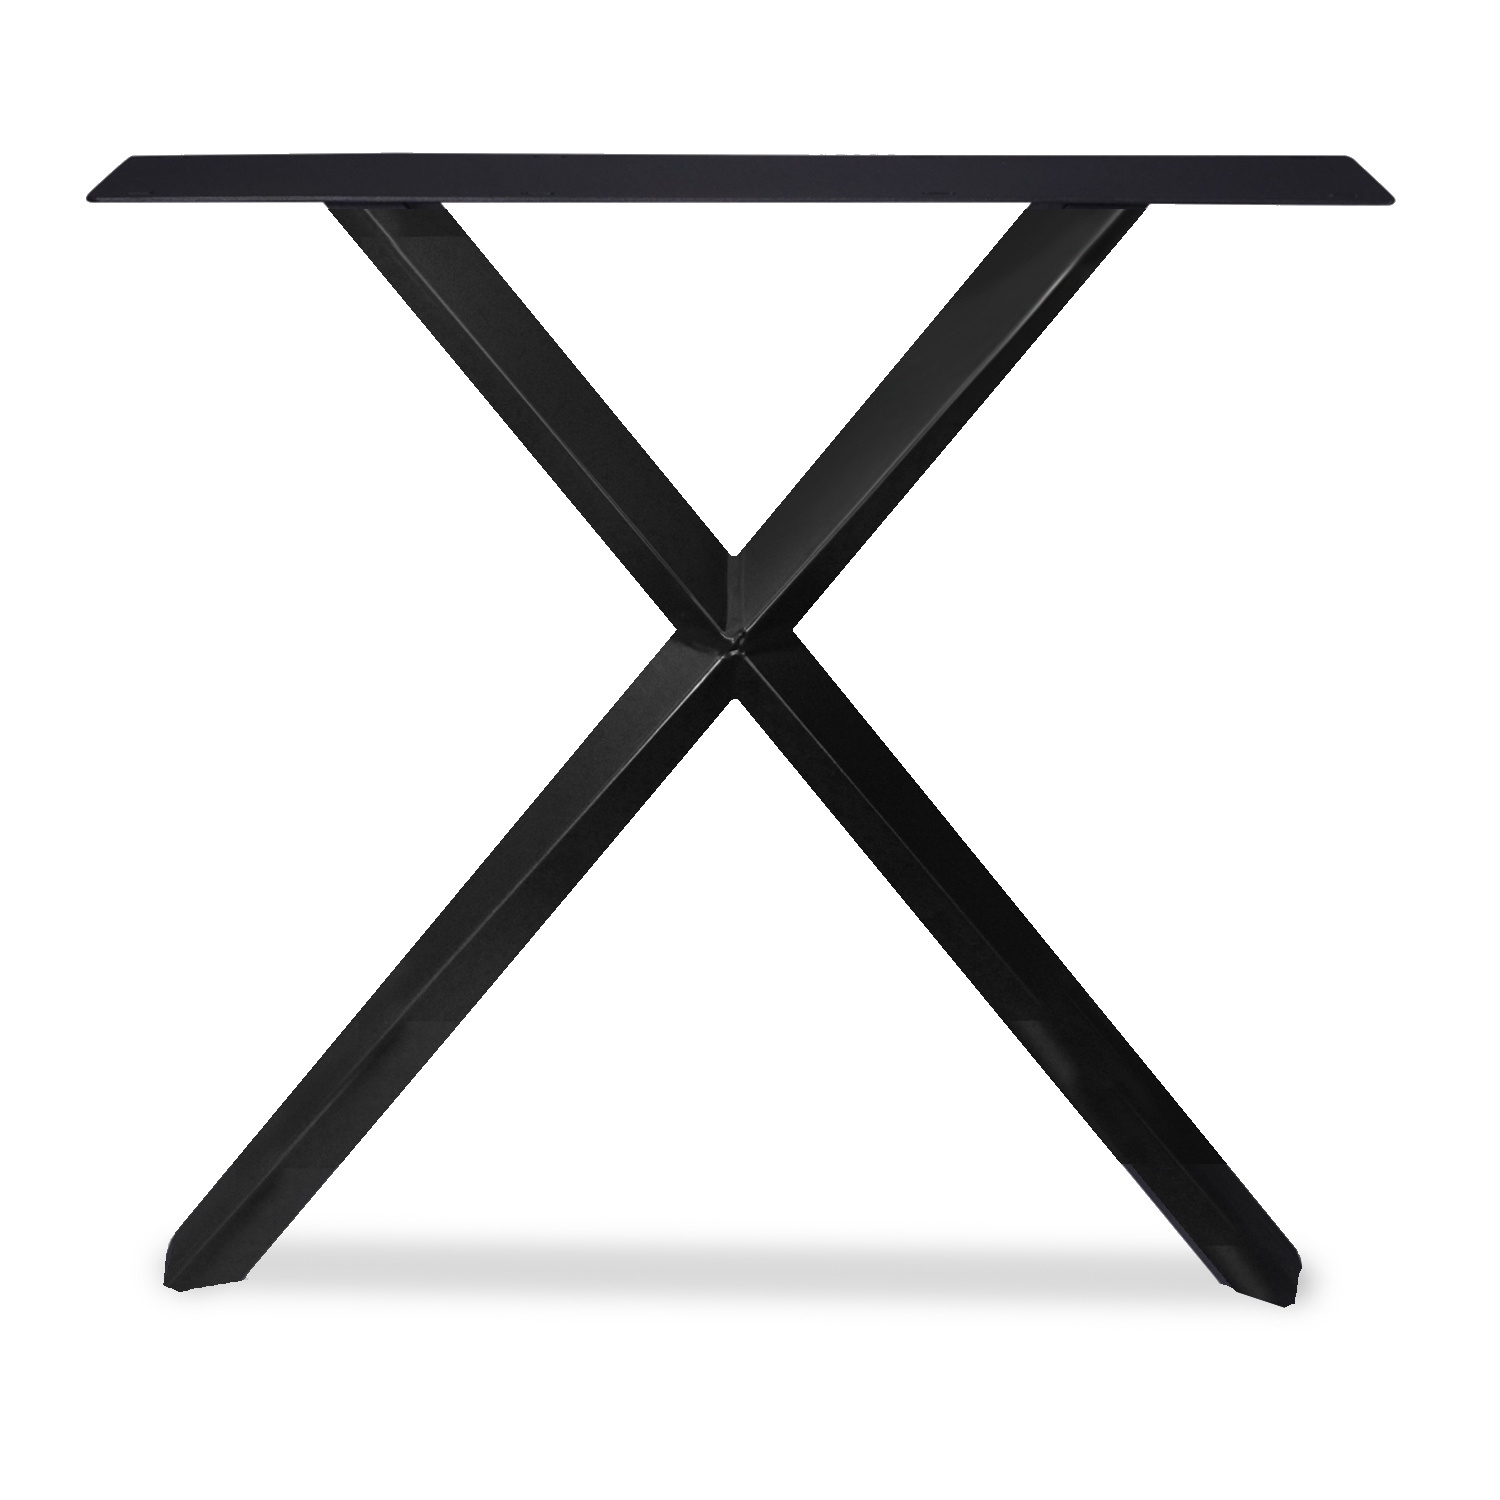  Tischbeine X-Stern Metall elegant SET (2 Stück) - 5,5x5,5 cm - 77-78 cm breit - 72 cm hoch - X-form Tischkufen / Tischgestell beschichtet - Schwarz